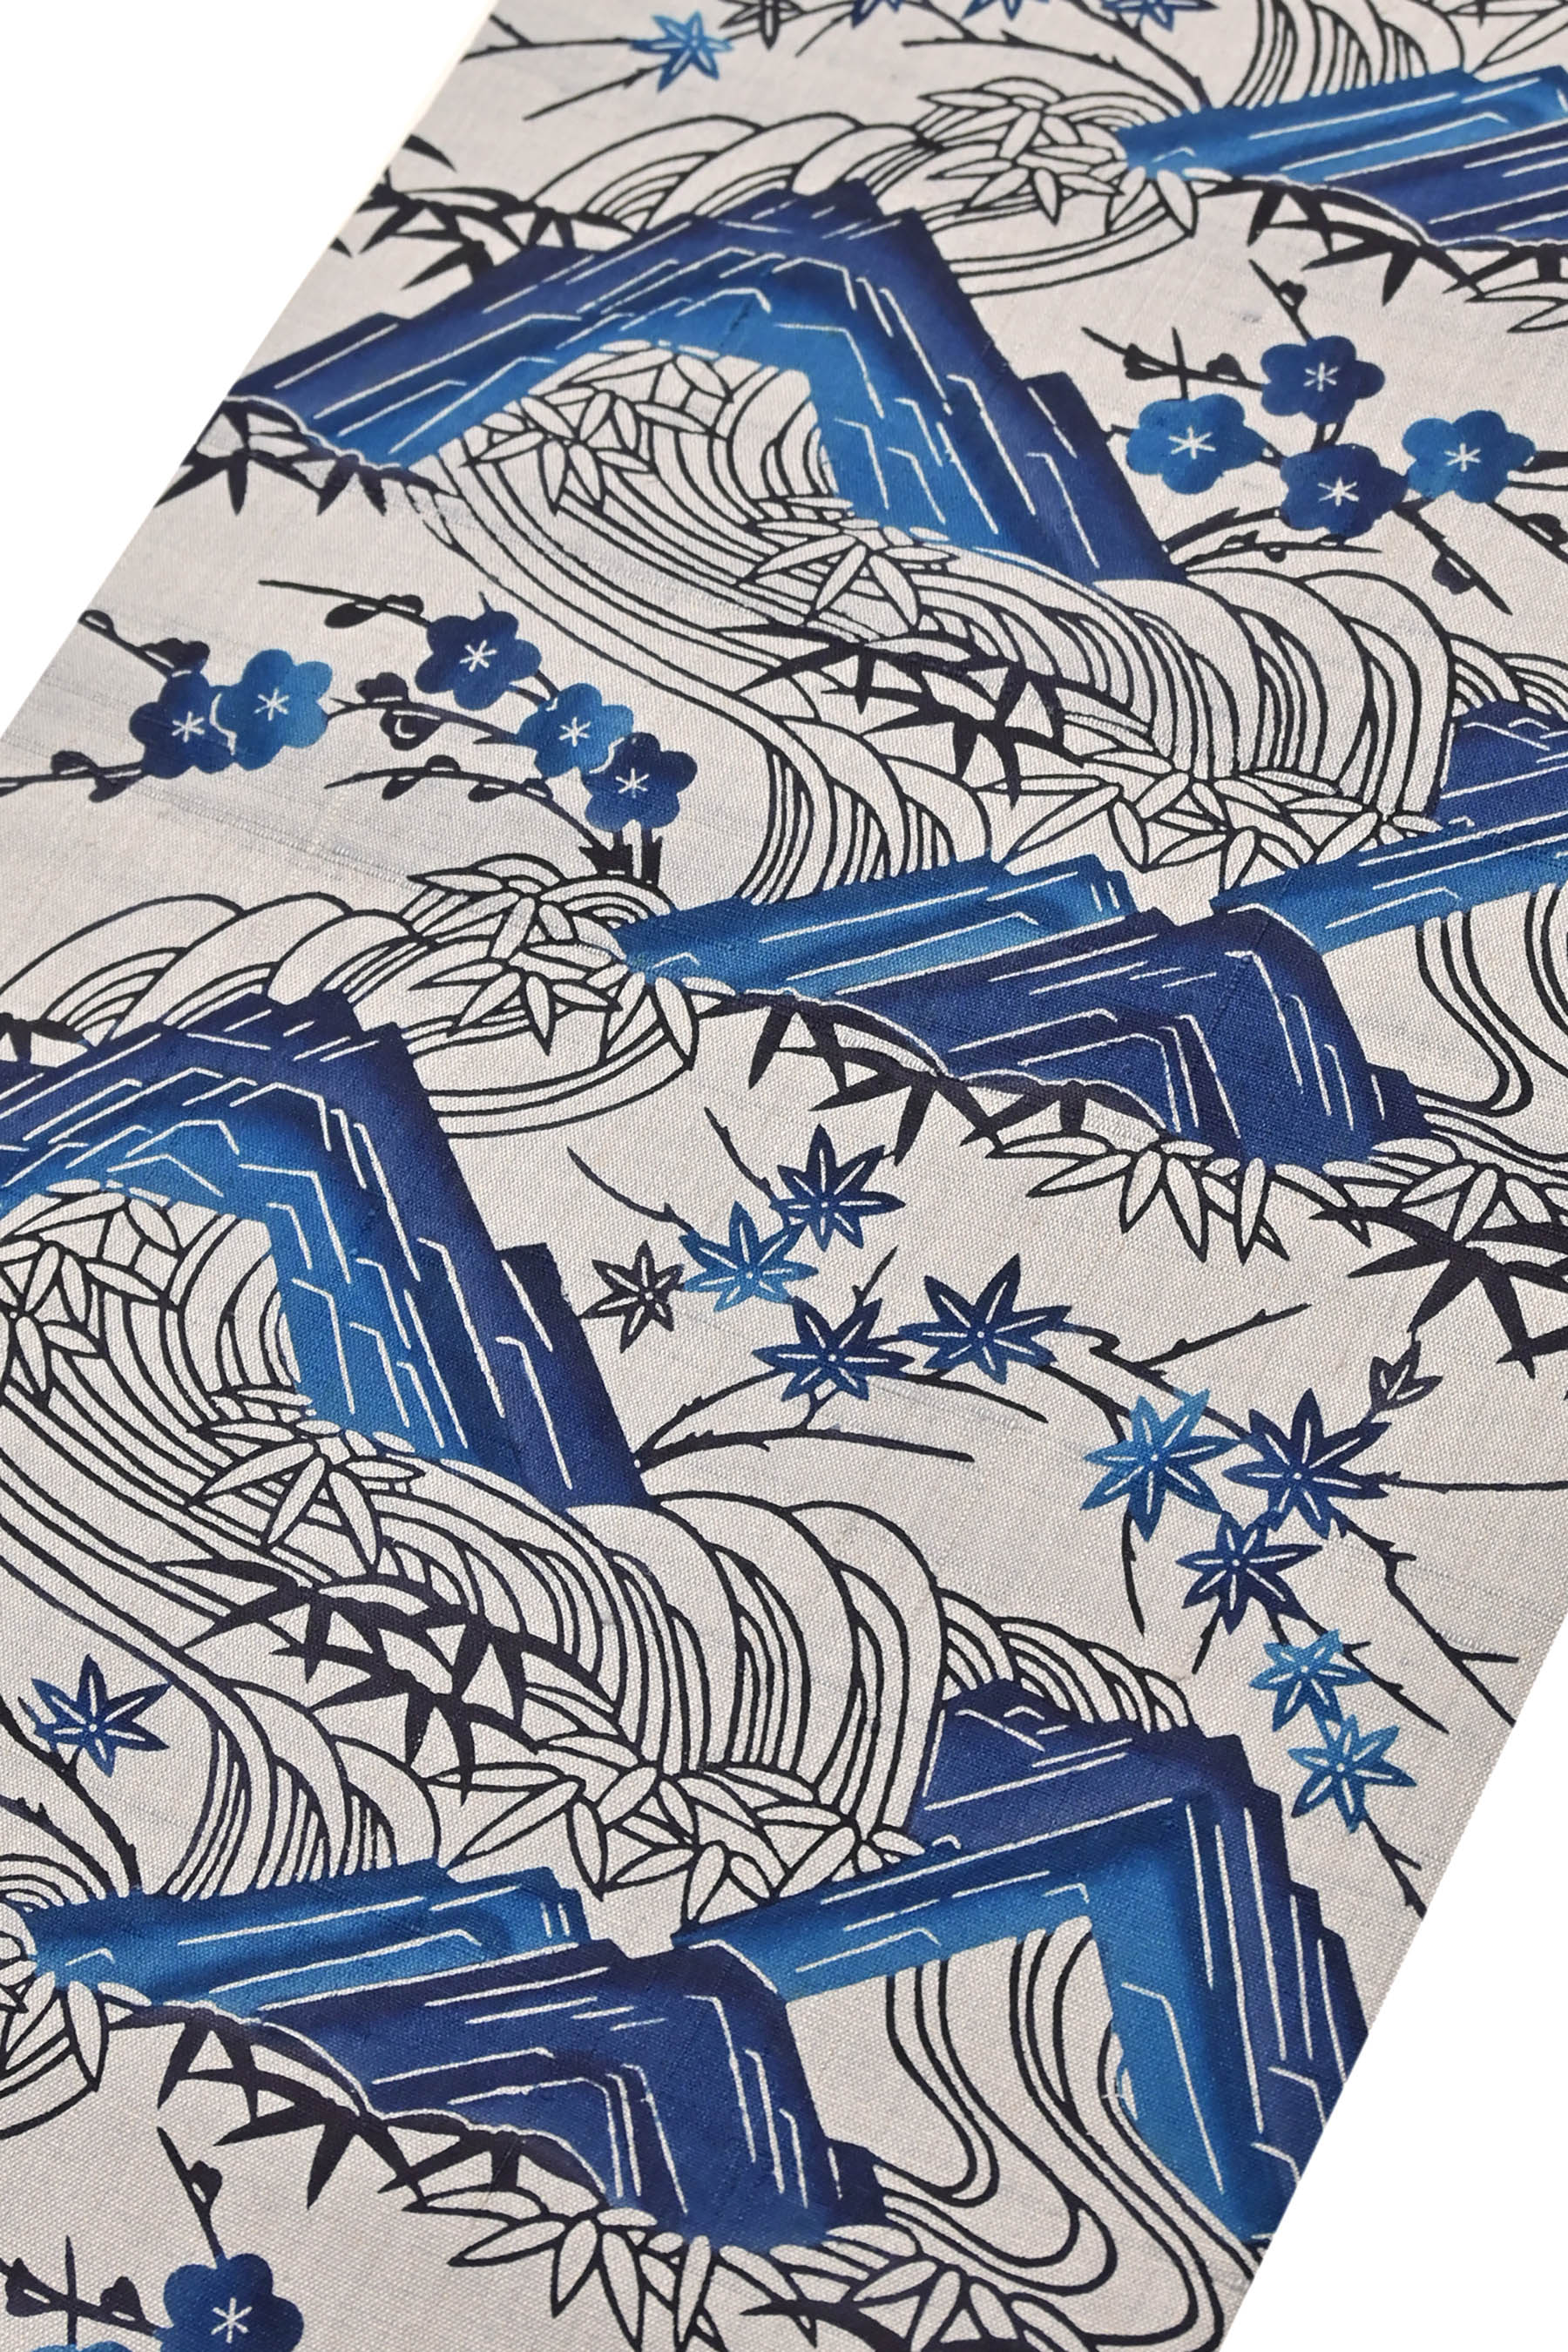 袖丈48cm花織 紬 青 グレー 浮き織 琉球